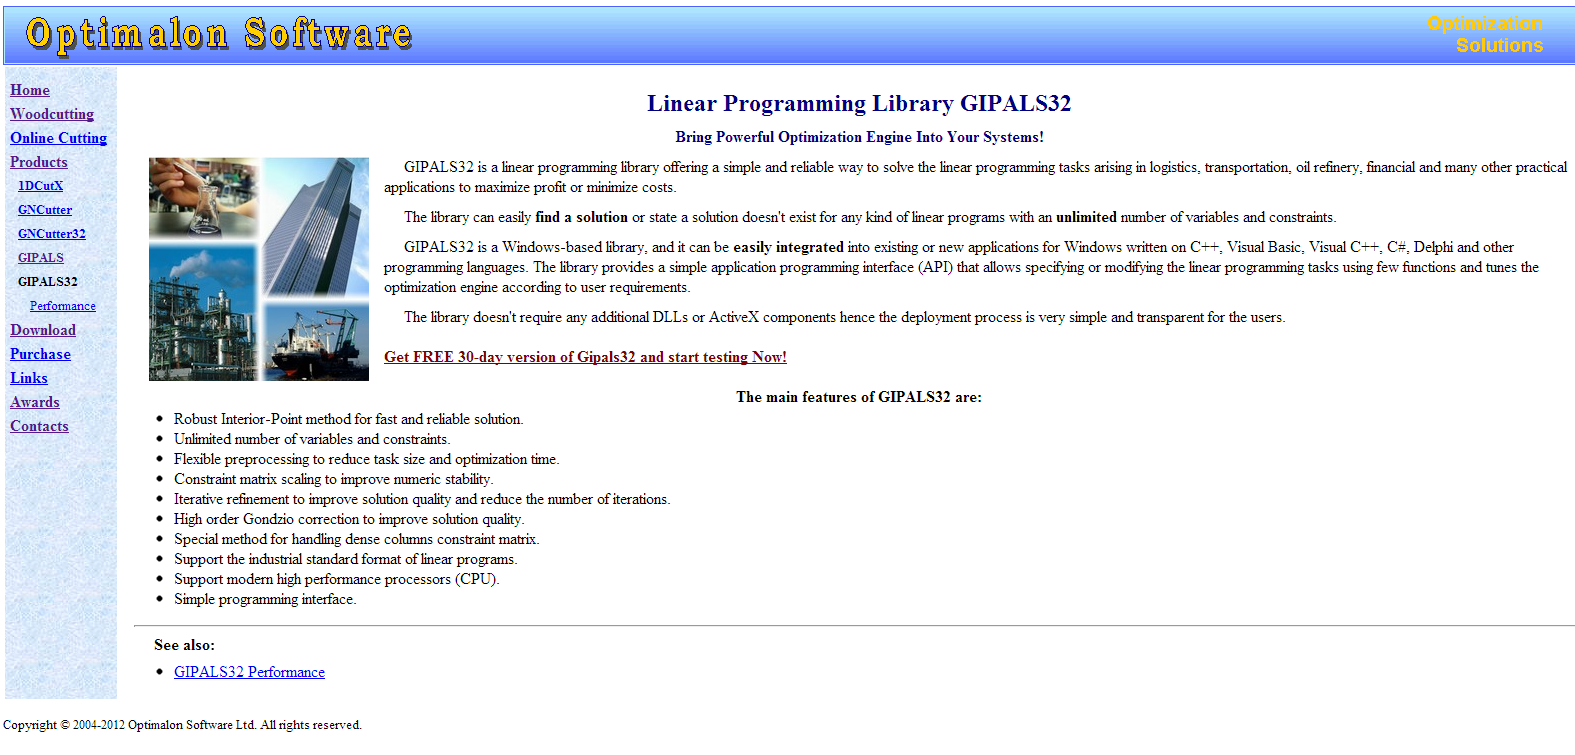 32 Συγκριτική Μελέτη Λογισμικών για το χώρο του Γραμμικού Προγραμματισμού 2.6 Εγκατάσταση λογισμικού GIPALS σε περιβάλλον Windows Πηγαίνουμε στην ιστοσελίδα http://www.optimalon.com/product_gipals32.